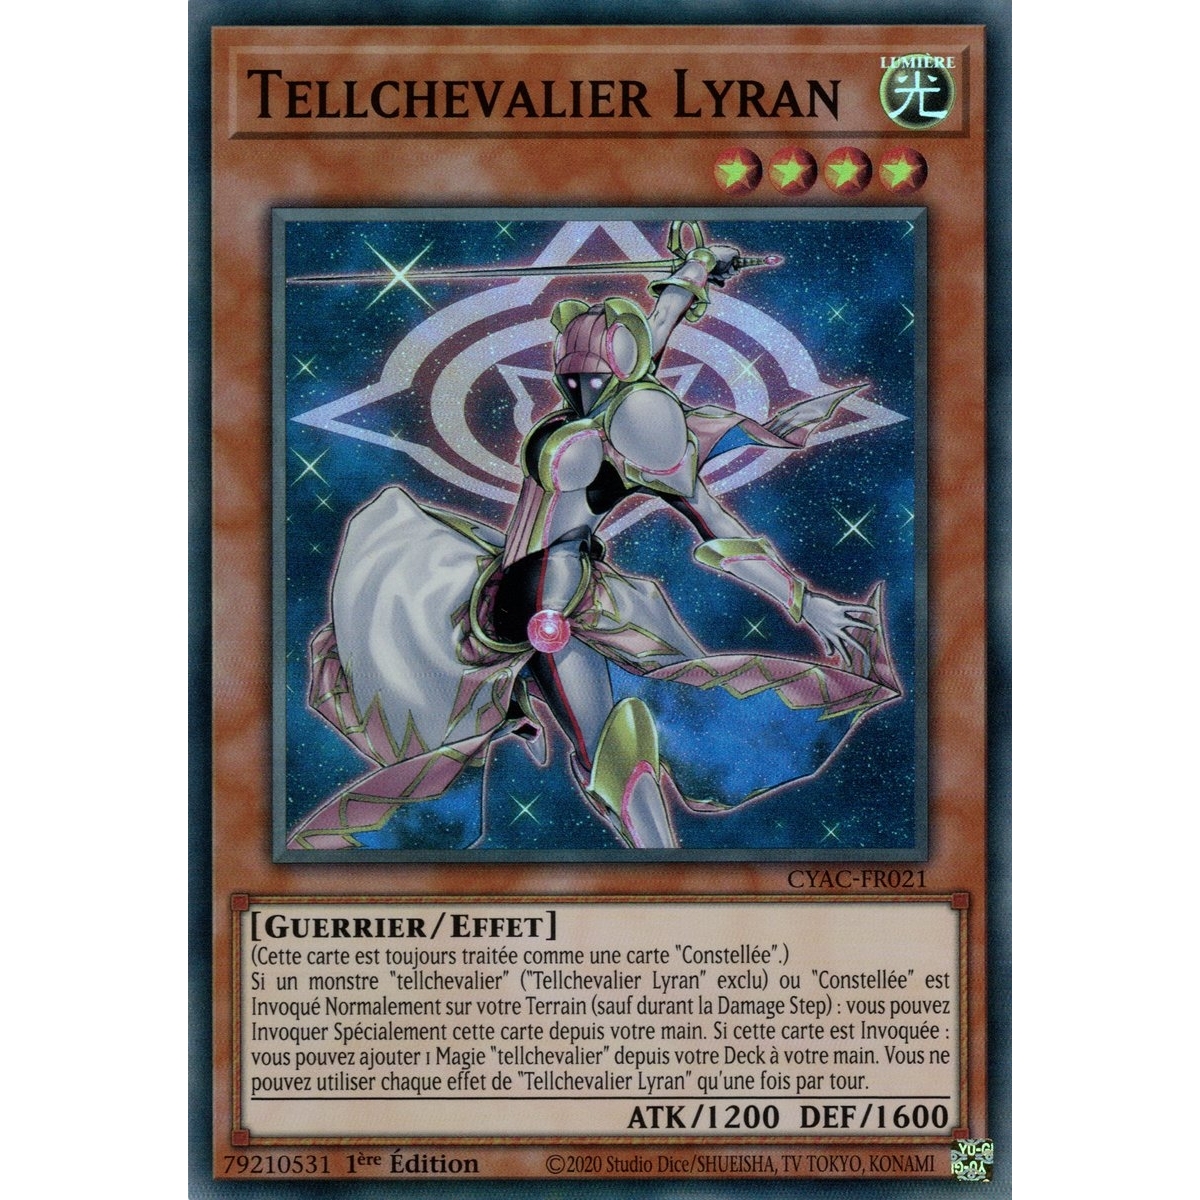 Tellchevalier Lyran CYAC-FR021